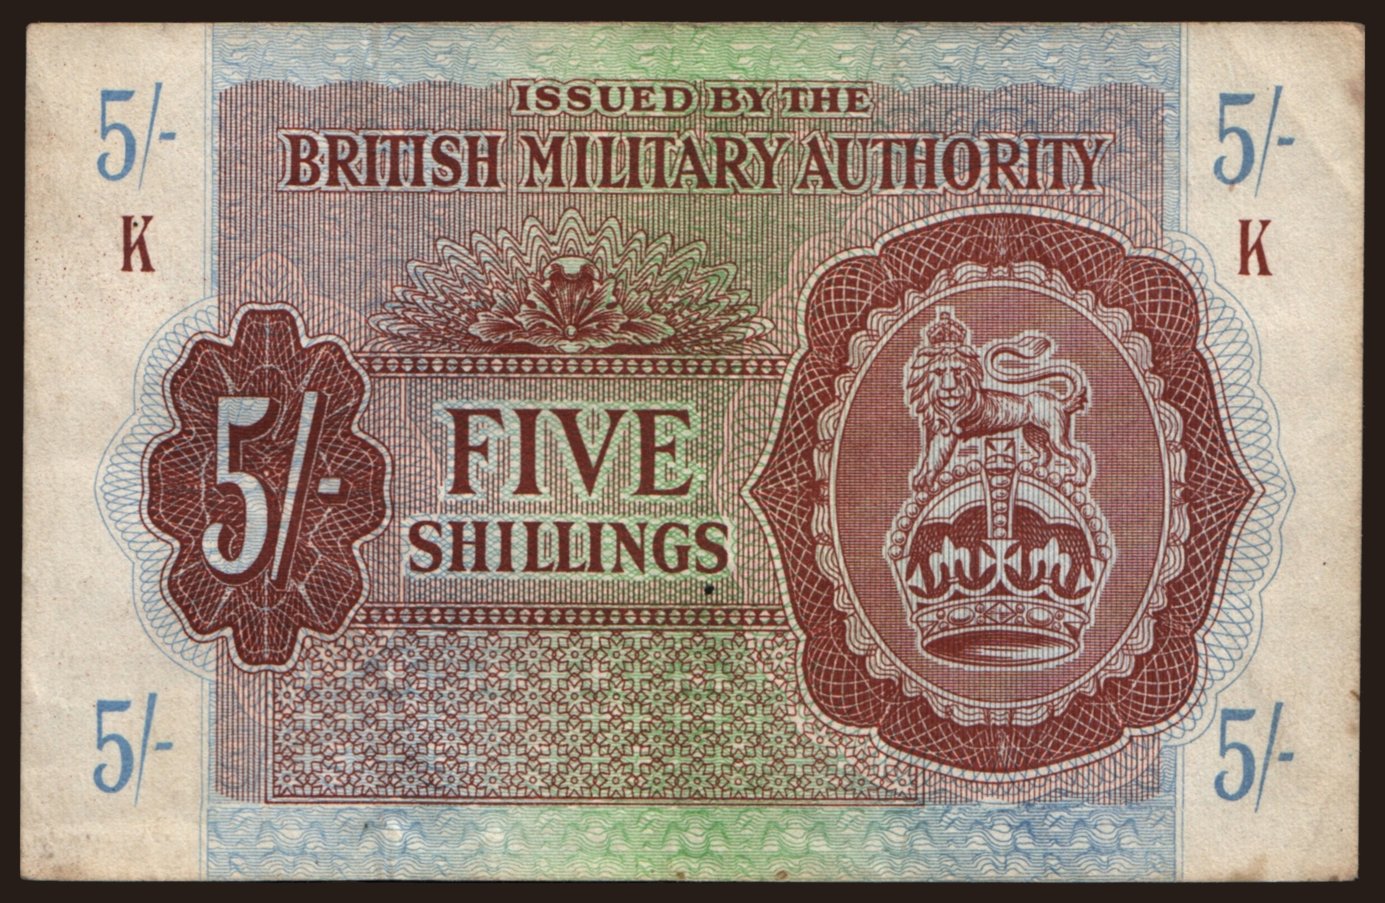 BMA, 5 shillings, 1943